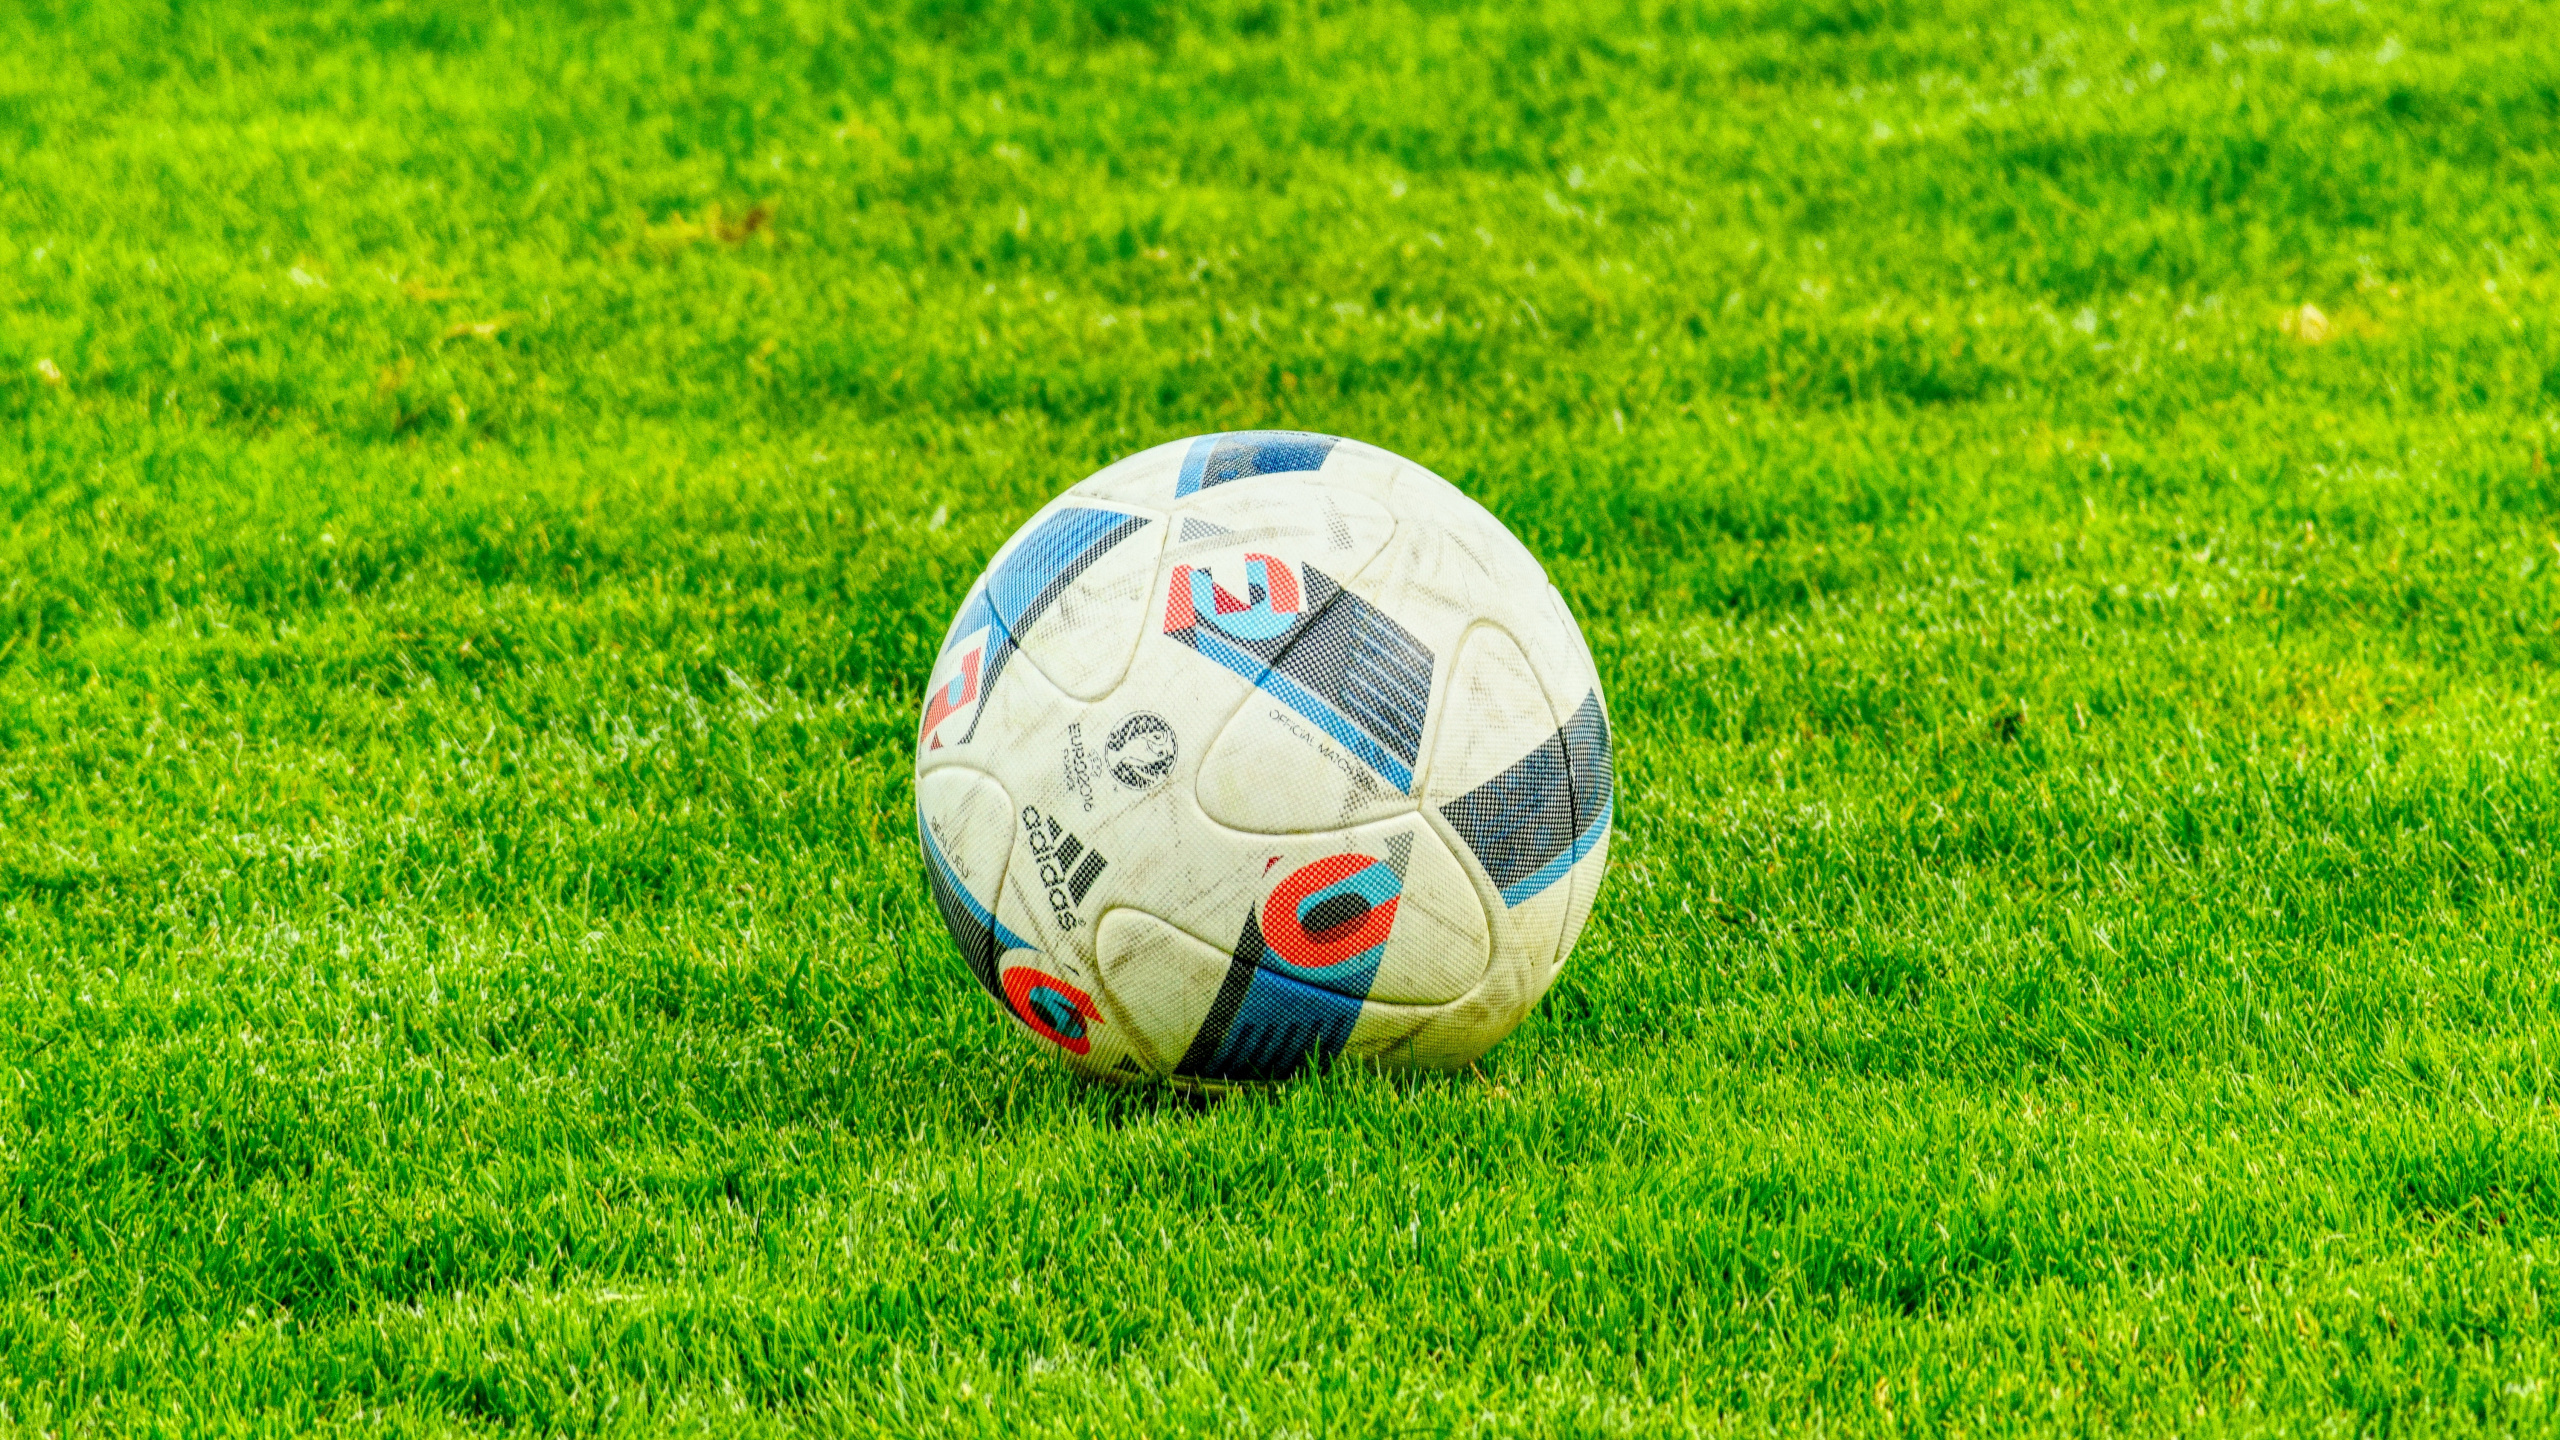 足球, 球, 草, 国际足球的规则, 气球 壁纸 2560x1440 允许